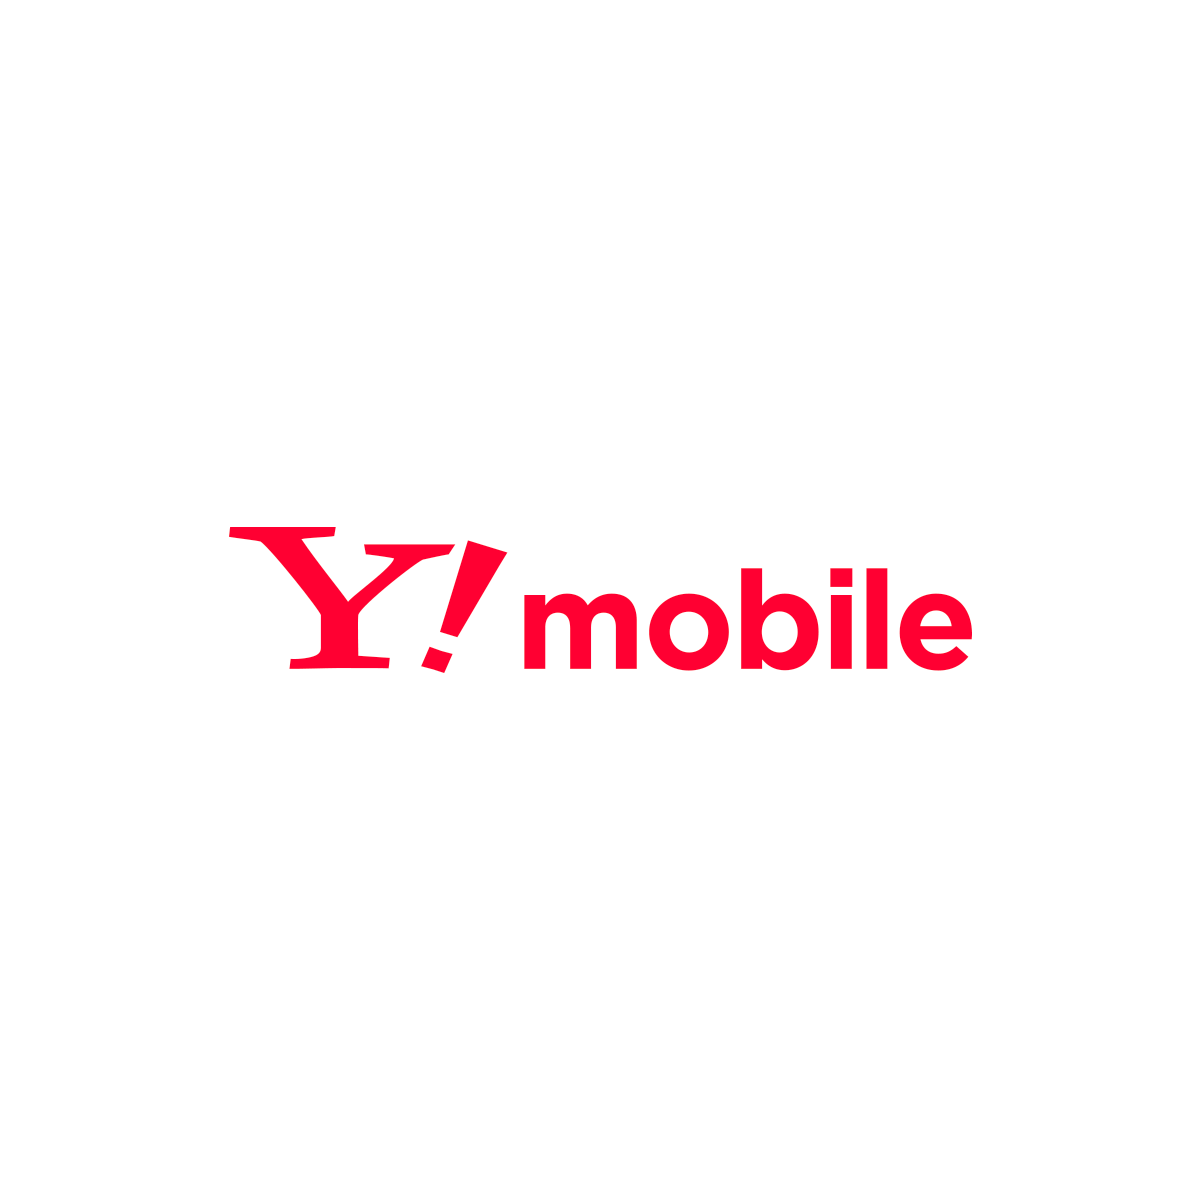 Y!mobileサービスの初期登録をする｜Android｜ワイモバイルスマホの初期設定方法｜Y!mobile - 格安SIM・スマホはワイモバイルで